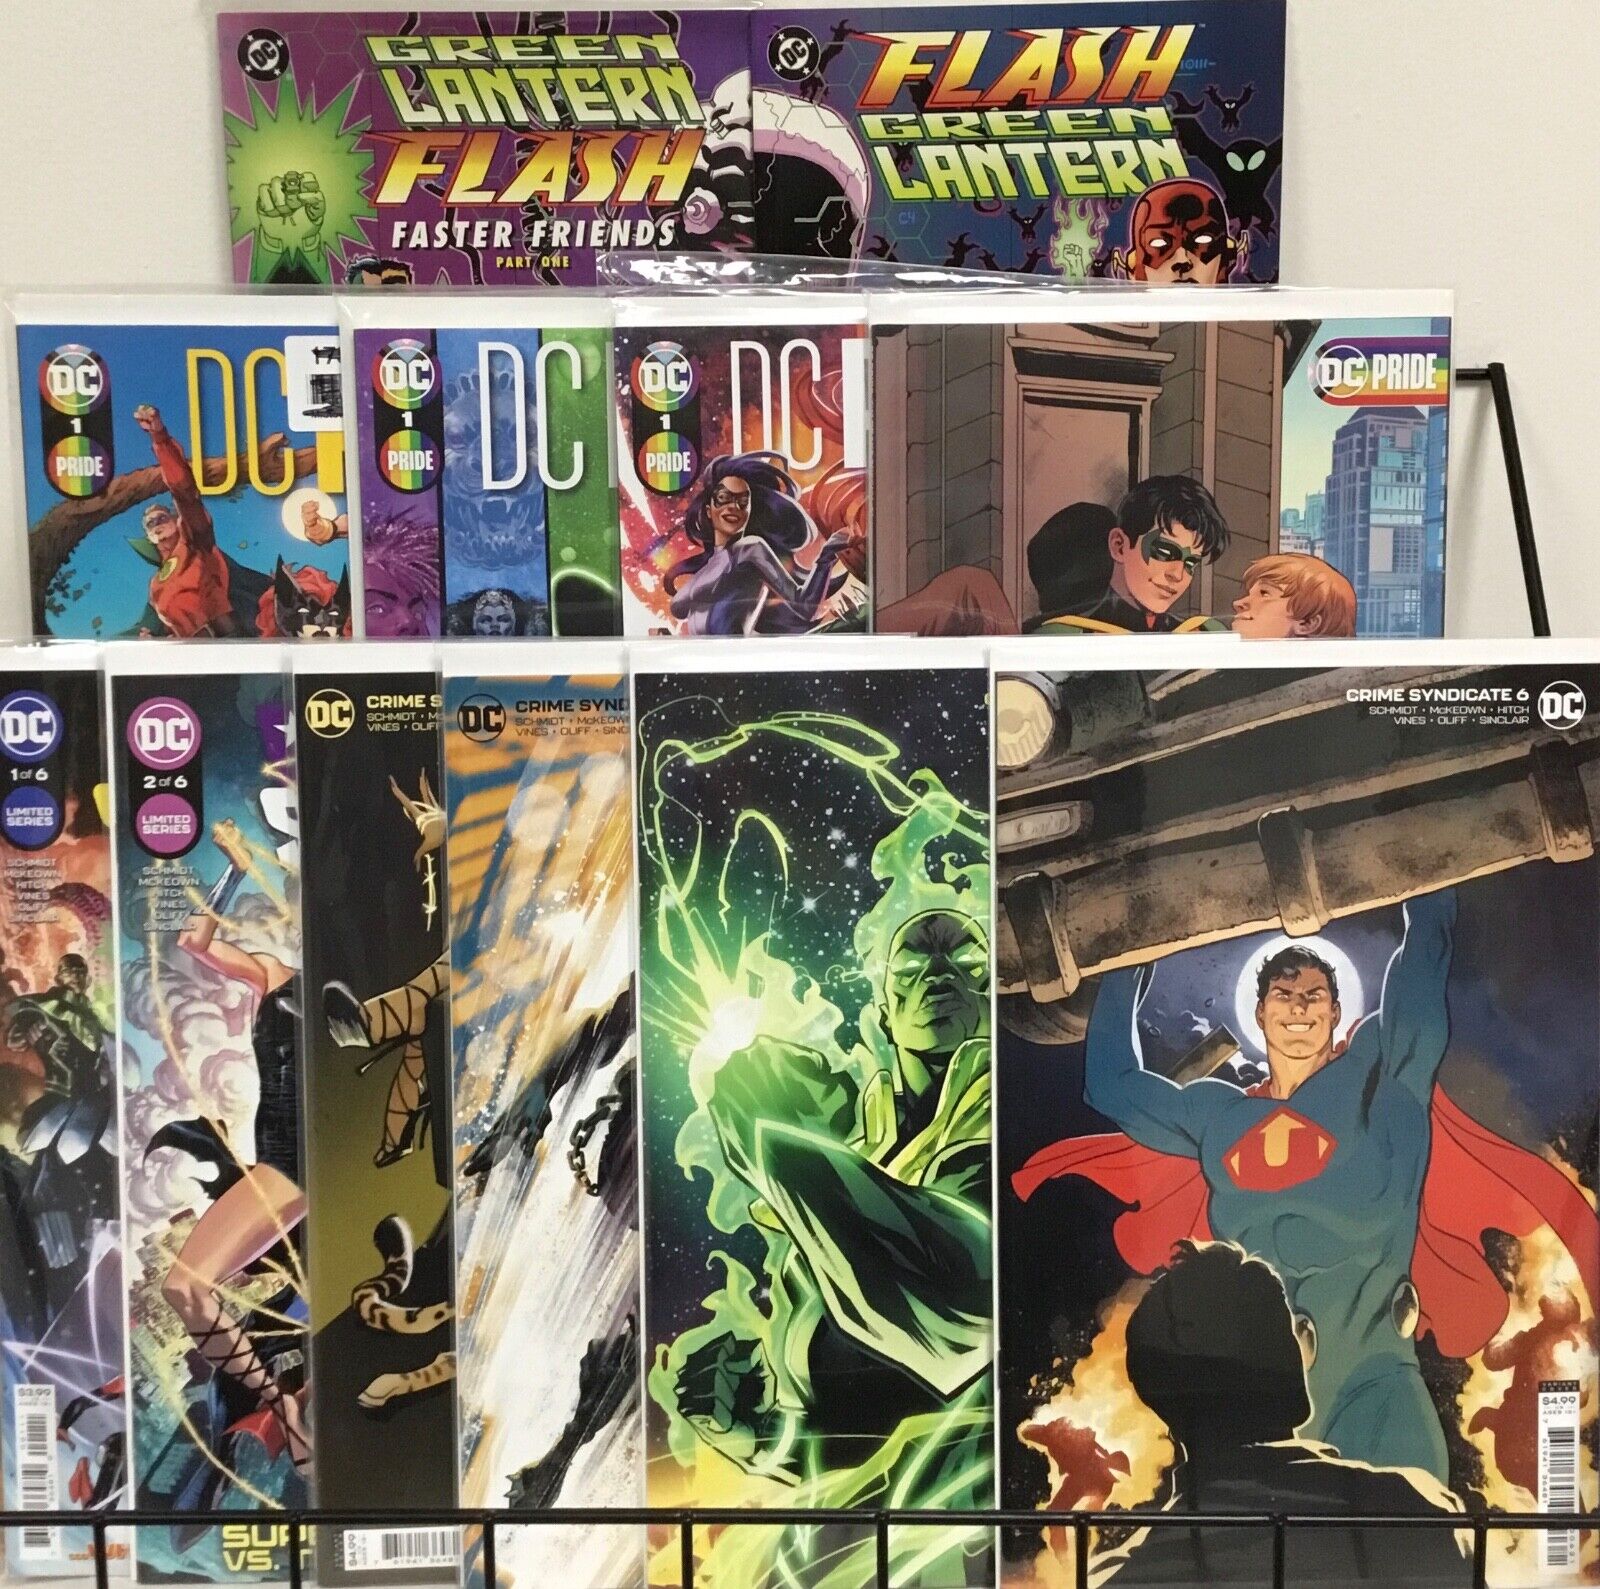 DC Comics Green Lantern/Flash 1-2, DC Pride 1-4, Crime Syndicate 1-6